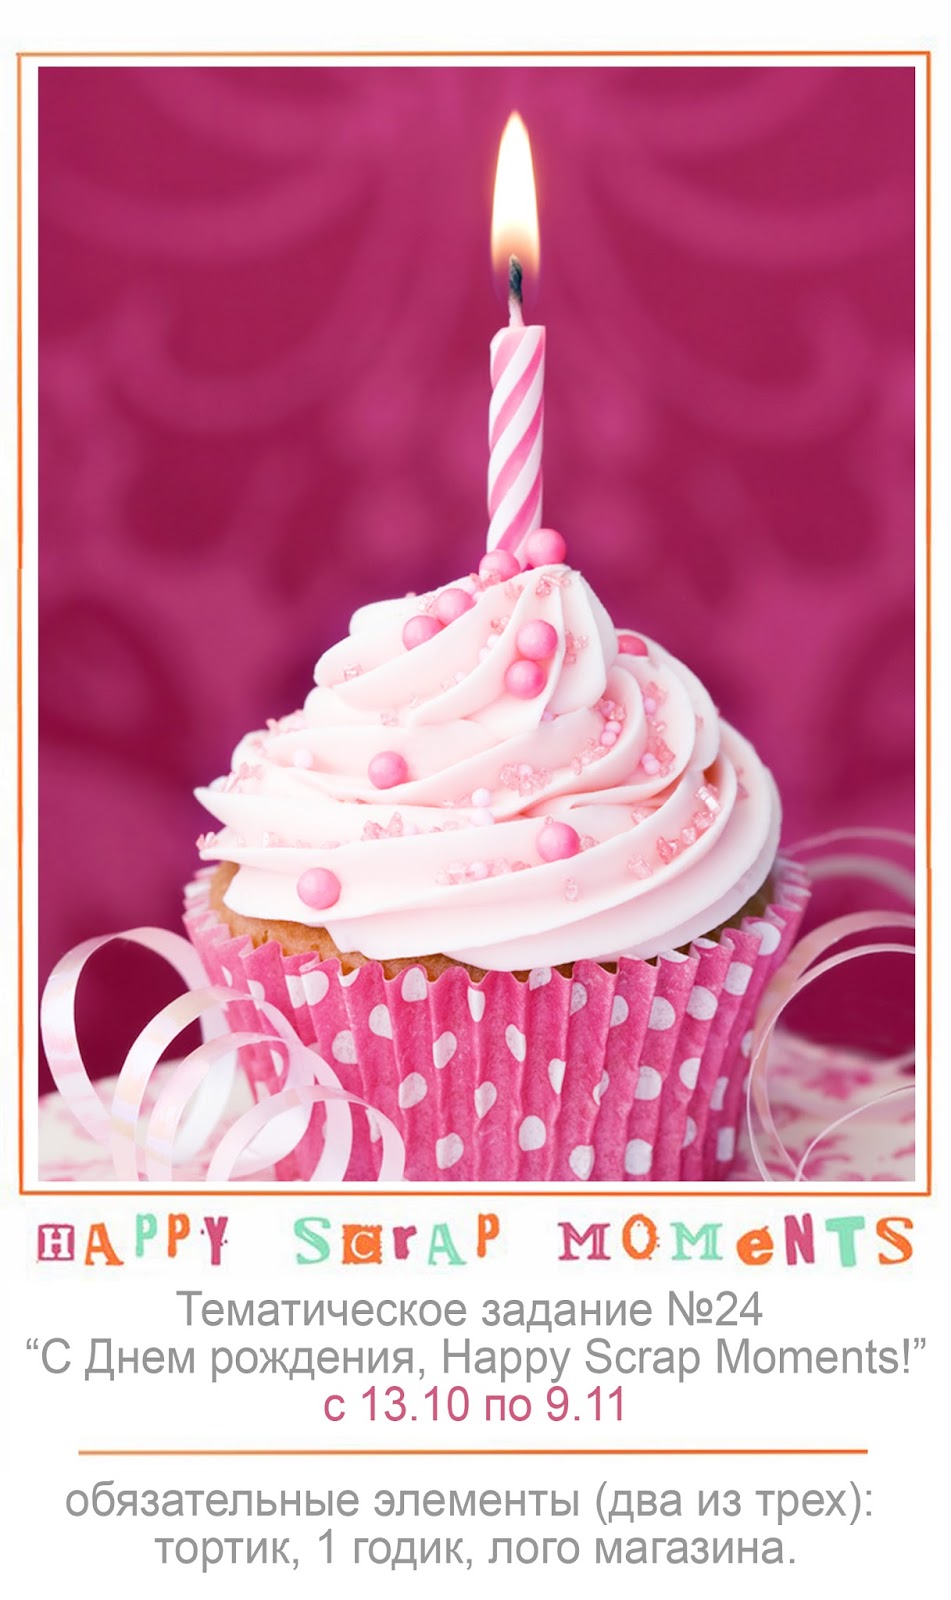 Розовая открытка с днем рождения. Торт со свечками. Пироженка со свечкой. Пирожное на день рождения. Тортик и пироченка на ДРСО свечкой.